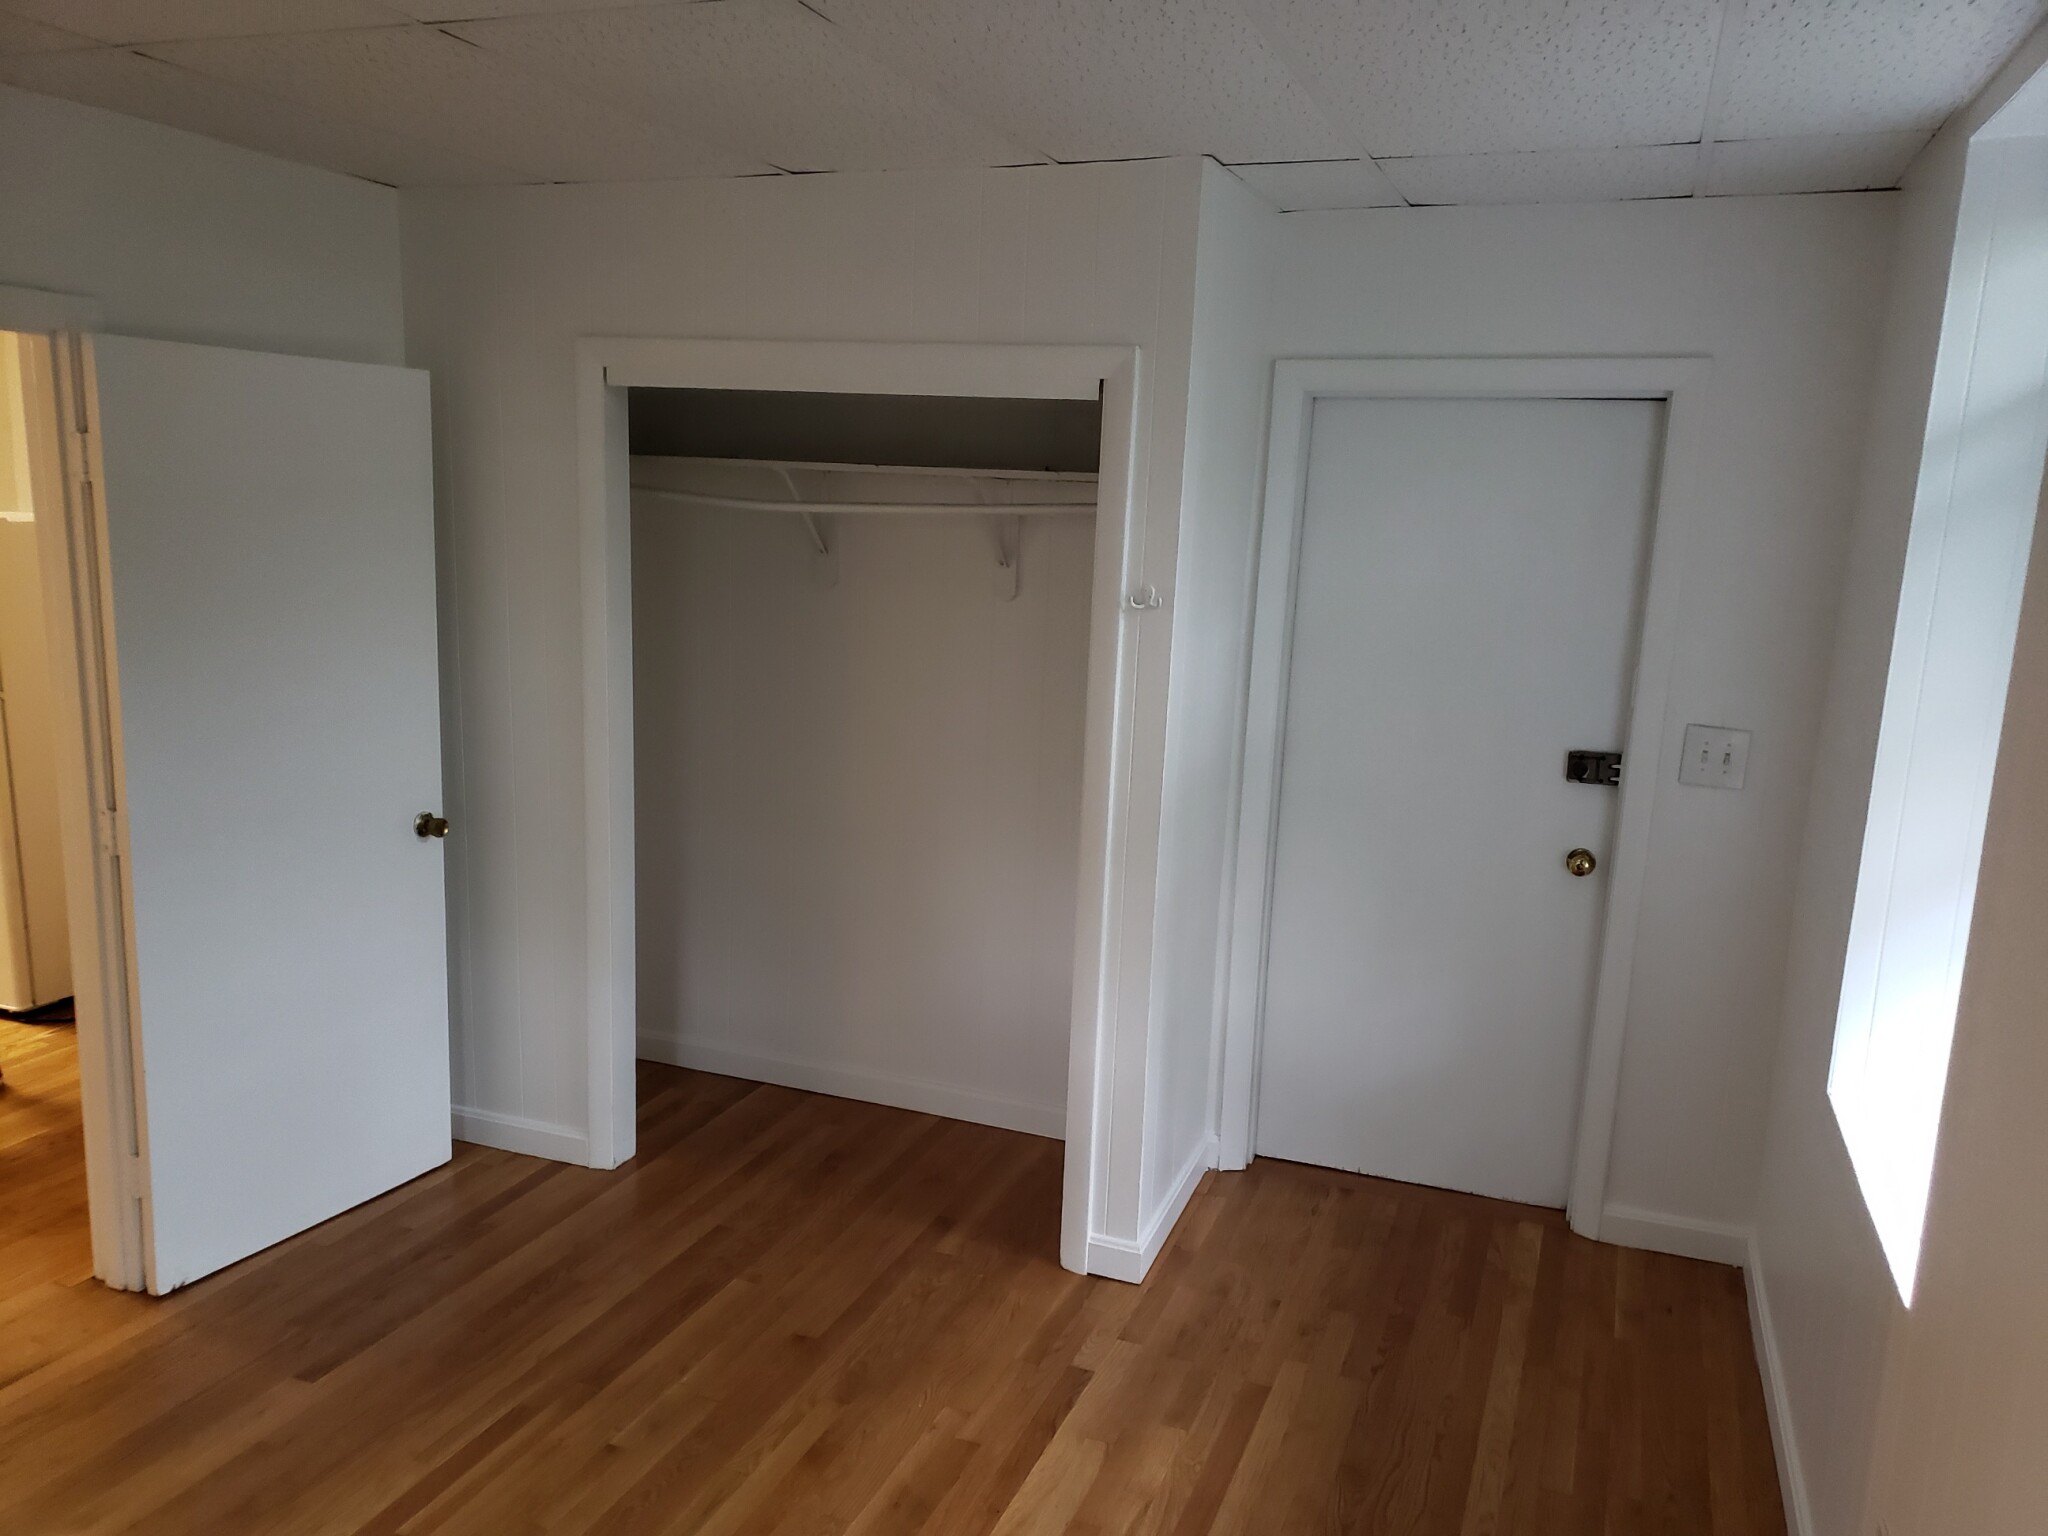 Photos of apartment on Gordon St.,Boston MA 02135